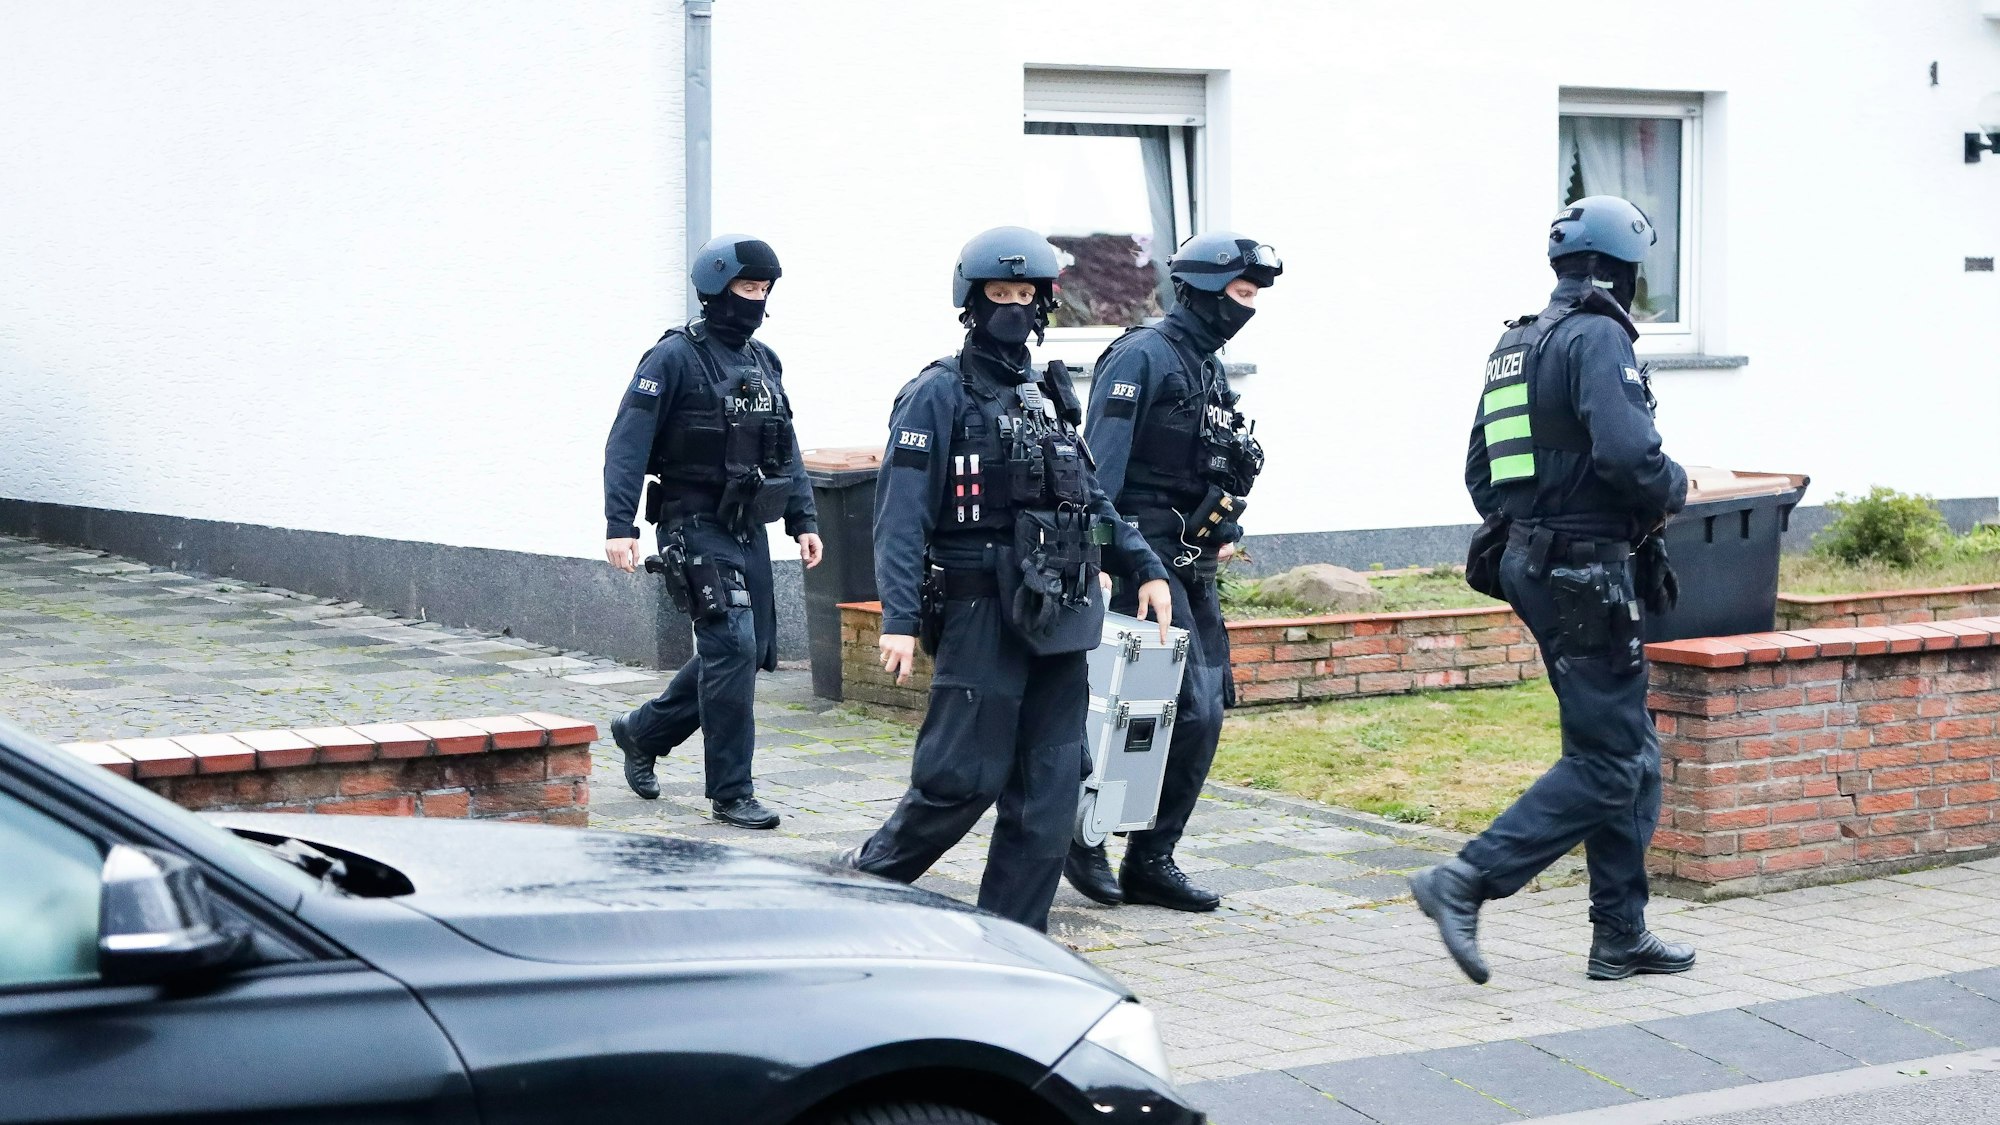 Einsatzkräfte der Polizei bei einer Razzia in einer Einfahrt in Köln.